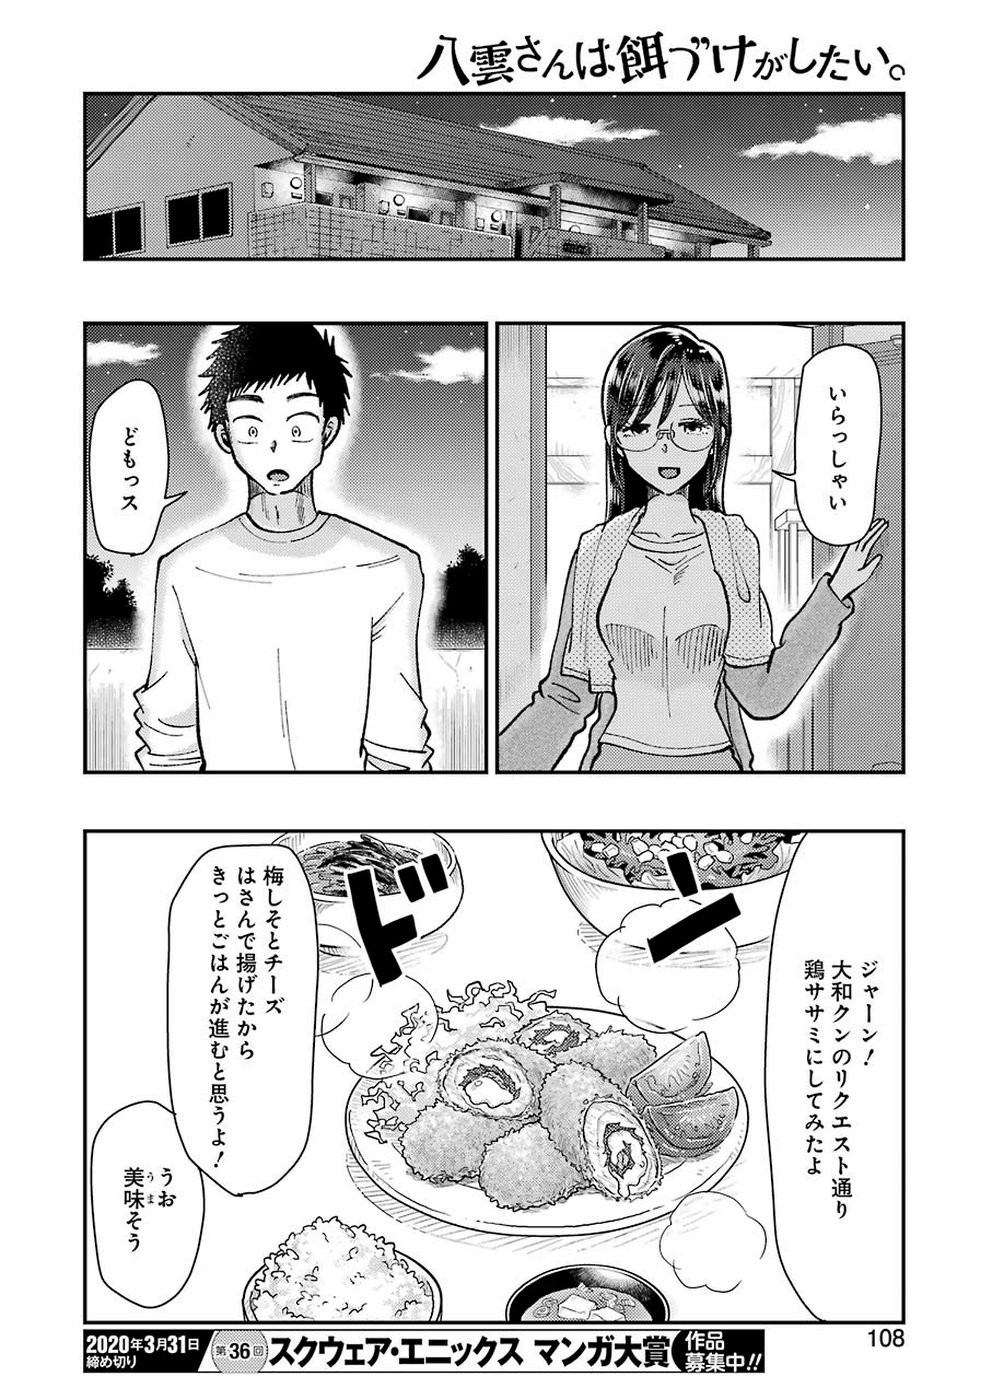 Yakumo-san wa Edzuke ga Shitai. - Chapter 061 - Page 20